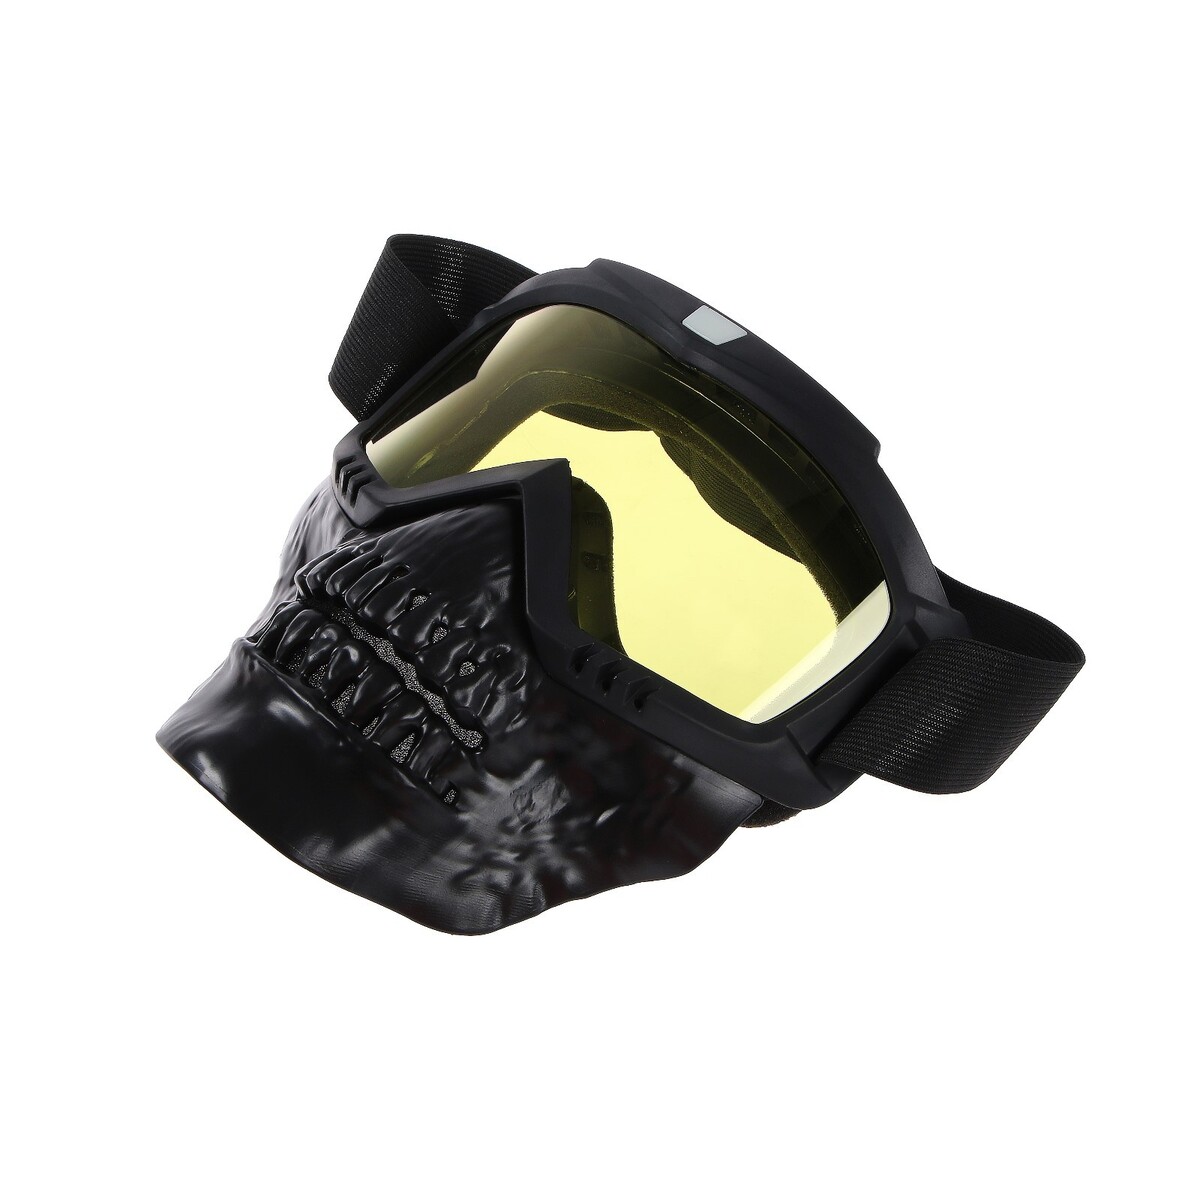 Очки-маска для езды на мототехнике, разборные, визор желтый, цвет черный маска для плавания salvas geo md mask ca140s1gysth желтый